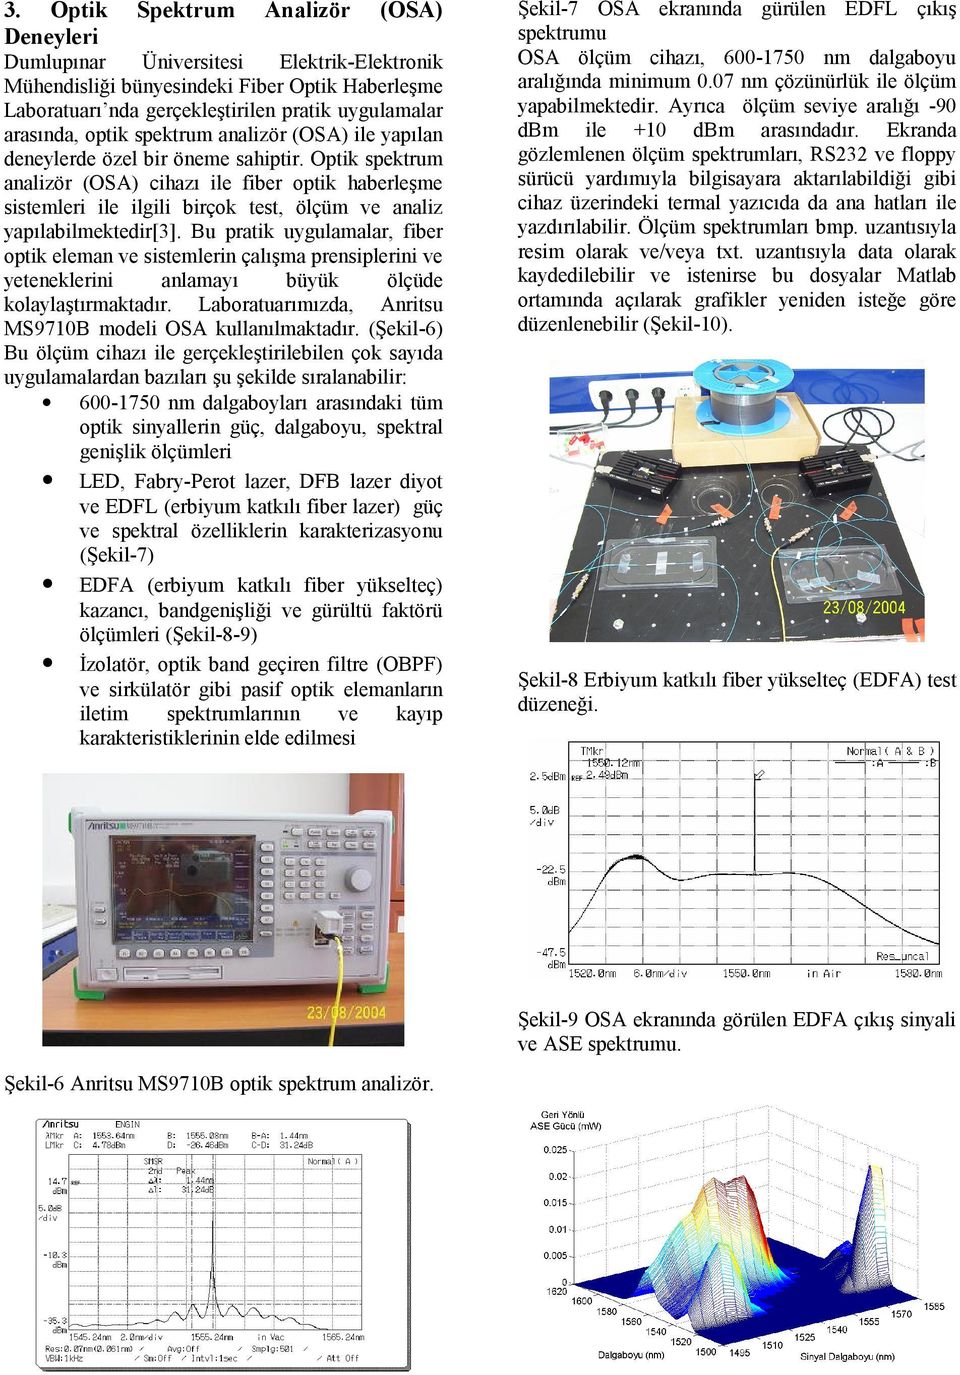 Optik spektrum analizör (OSA) cihazı ile fiber optik haberleşme sistemleri ile ilgili birçok test, ölçüm ve analiz yapılabilmektedir[3].